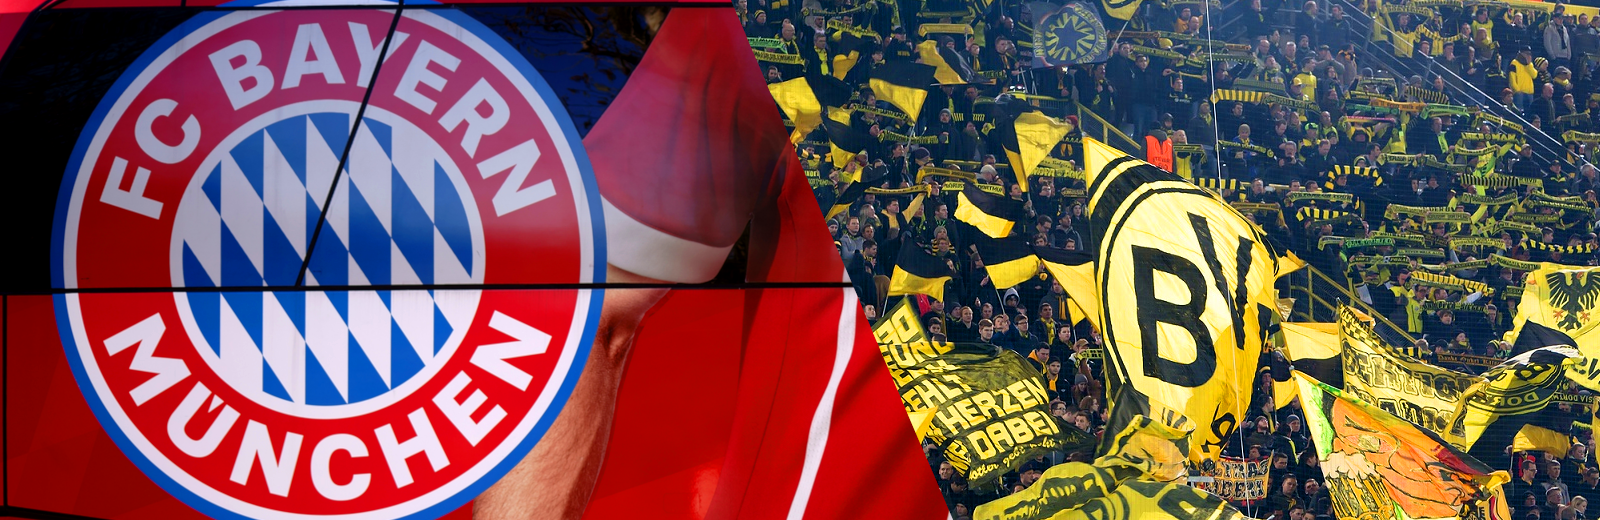 Supercup 2021 Bayern Dortmund